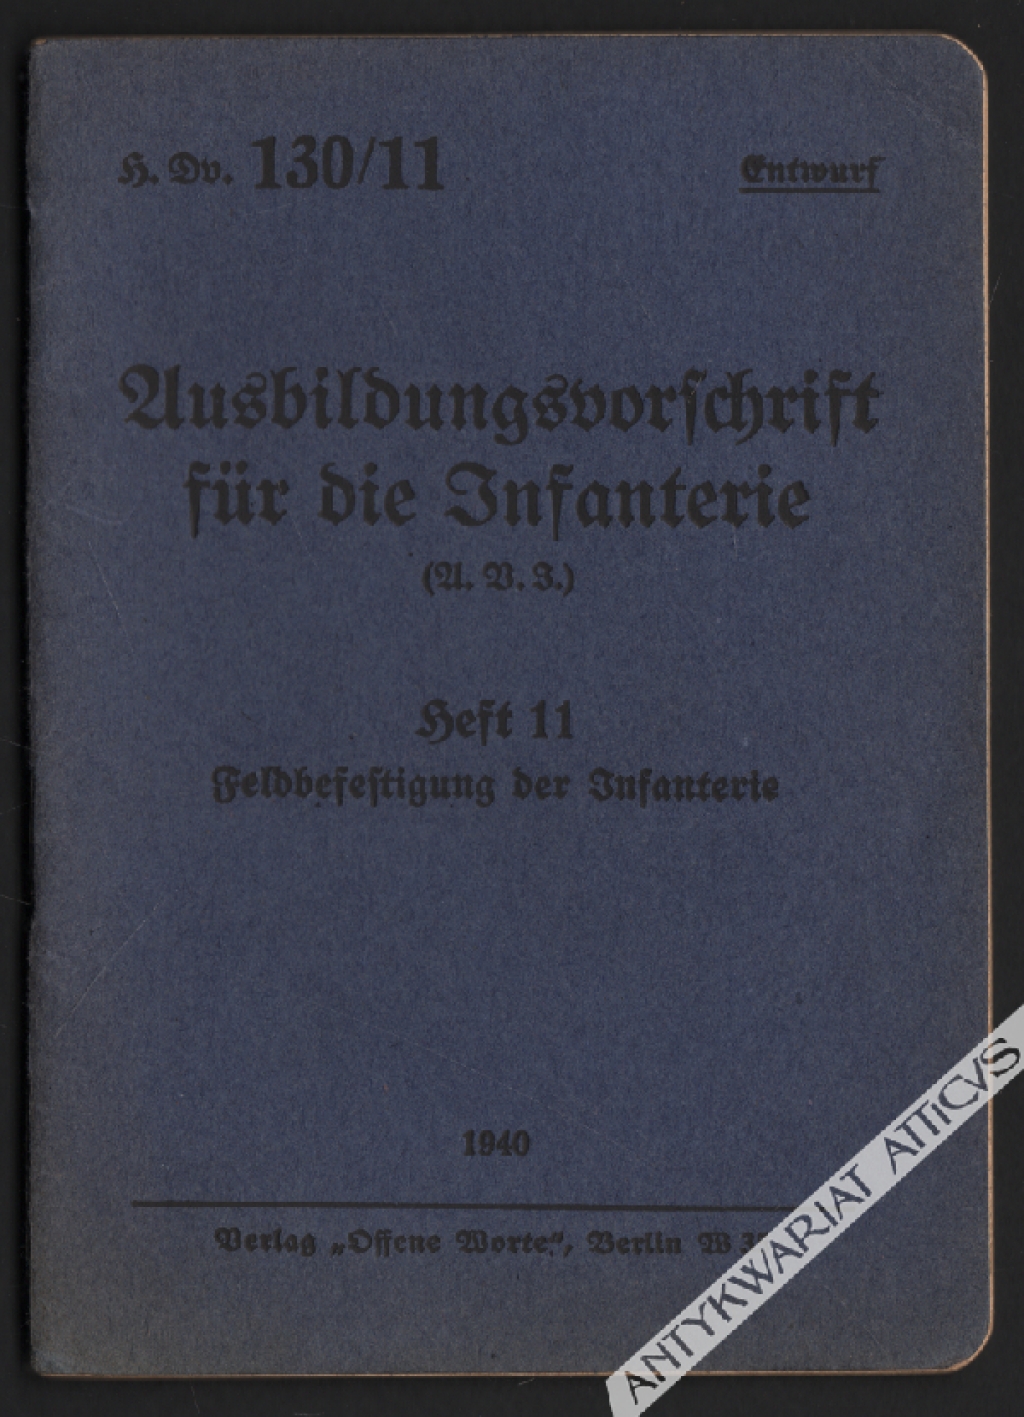 Ausbildungsvorschrift für die Infanterie. (A.B.I.) Heft 11. Feldbefestigung der Infanterie.